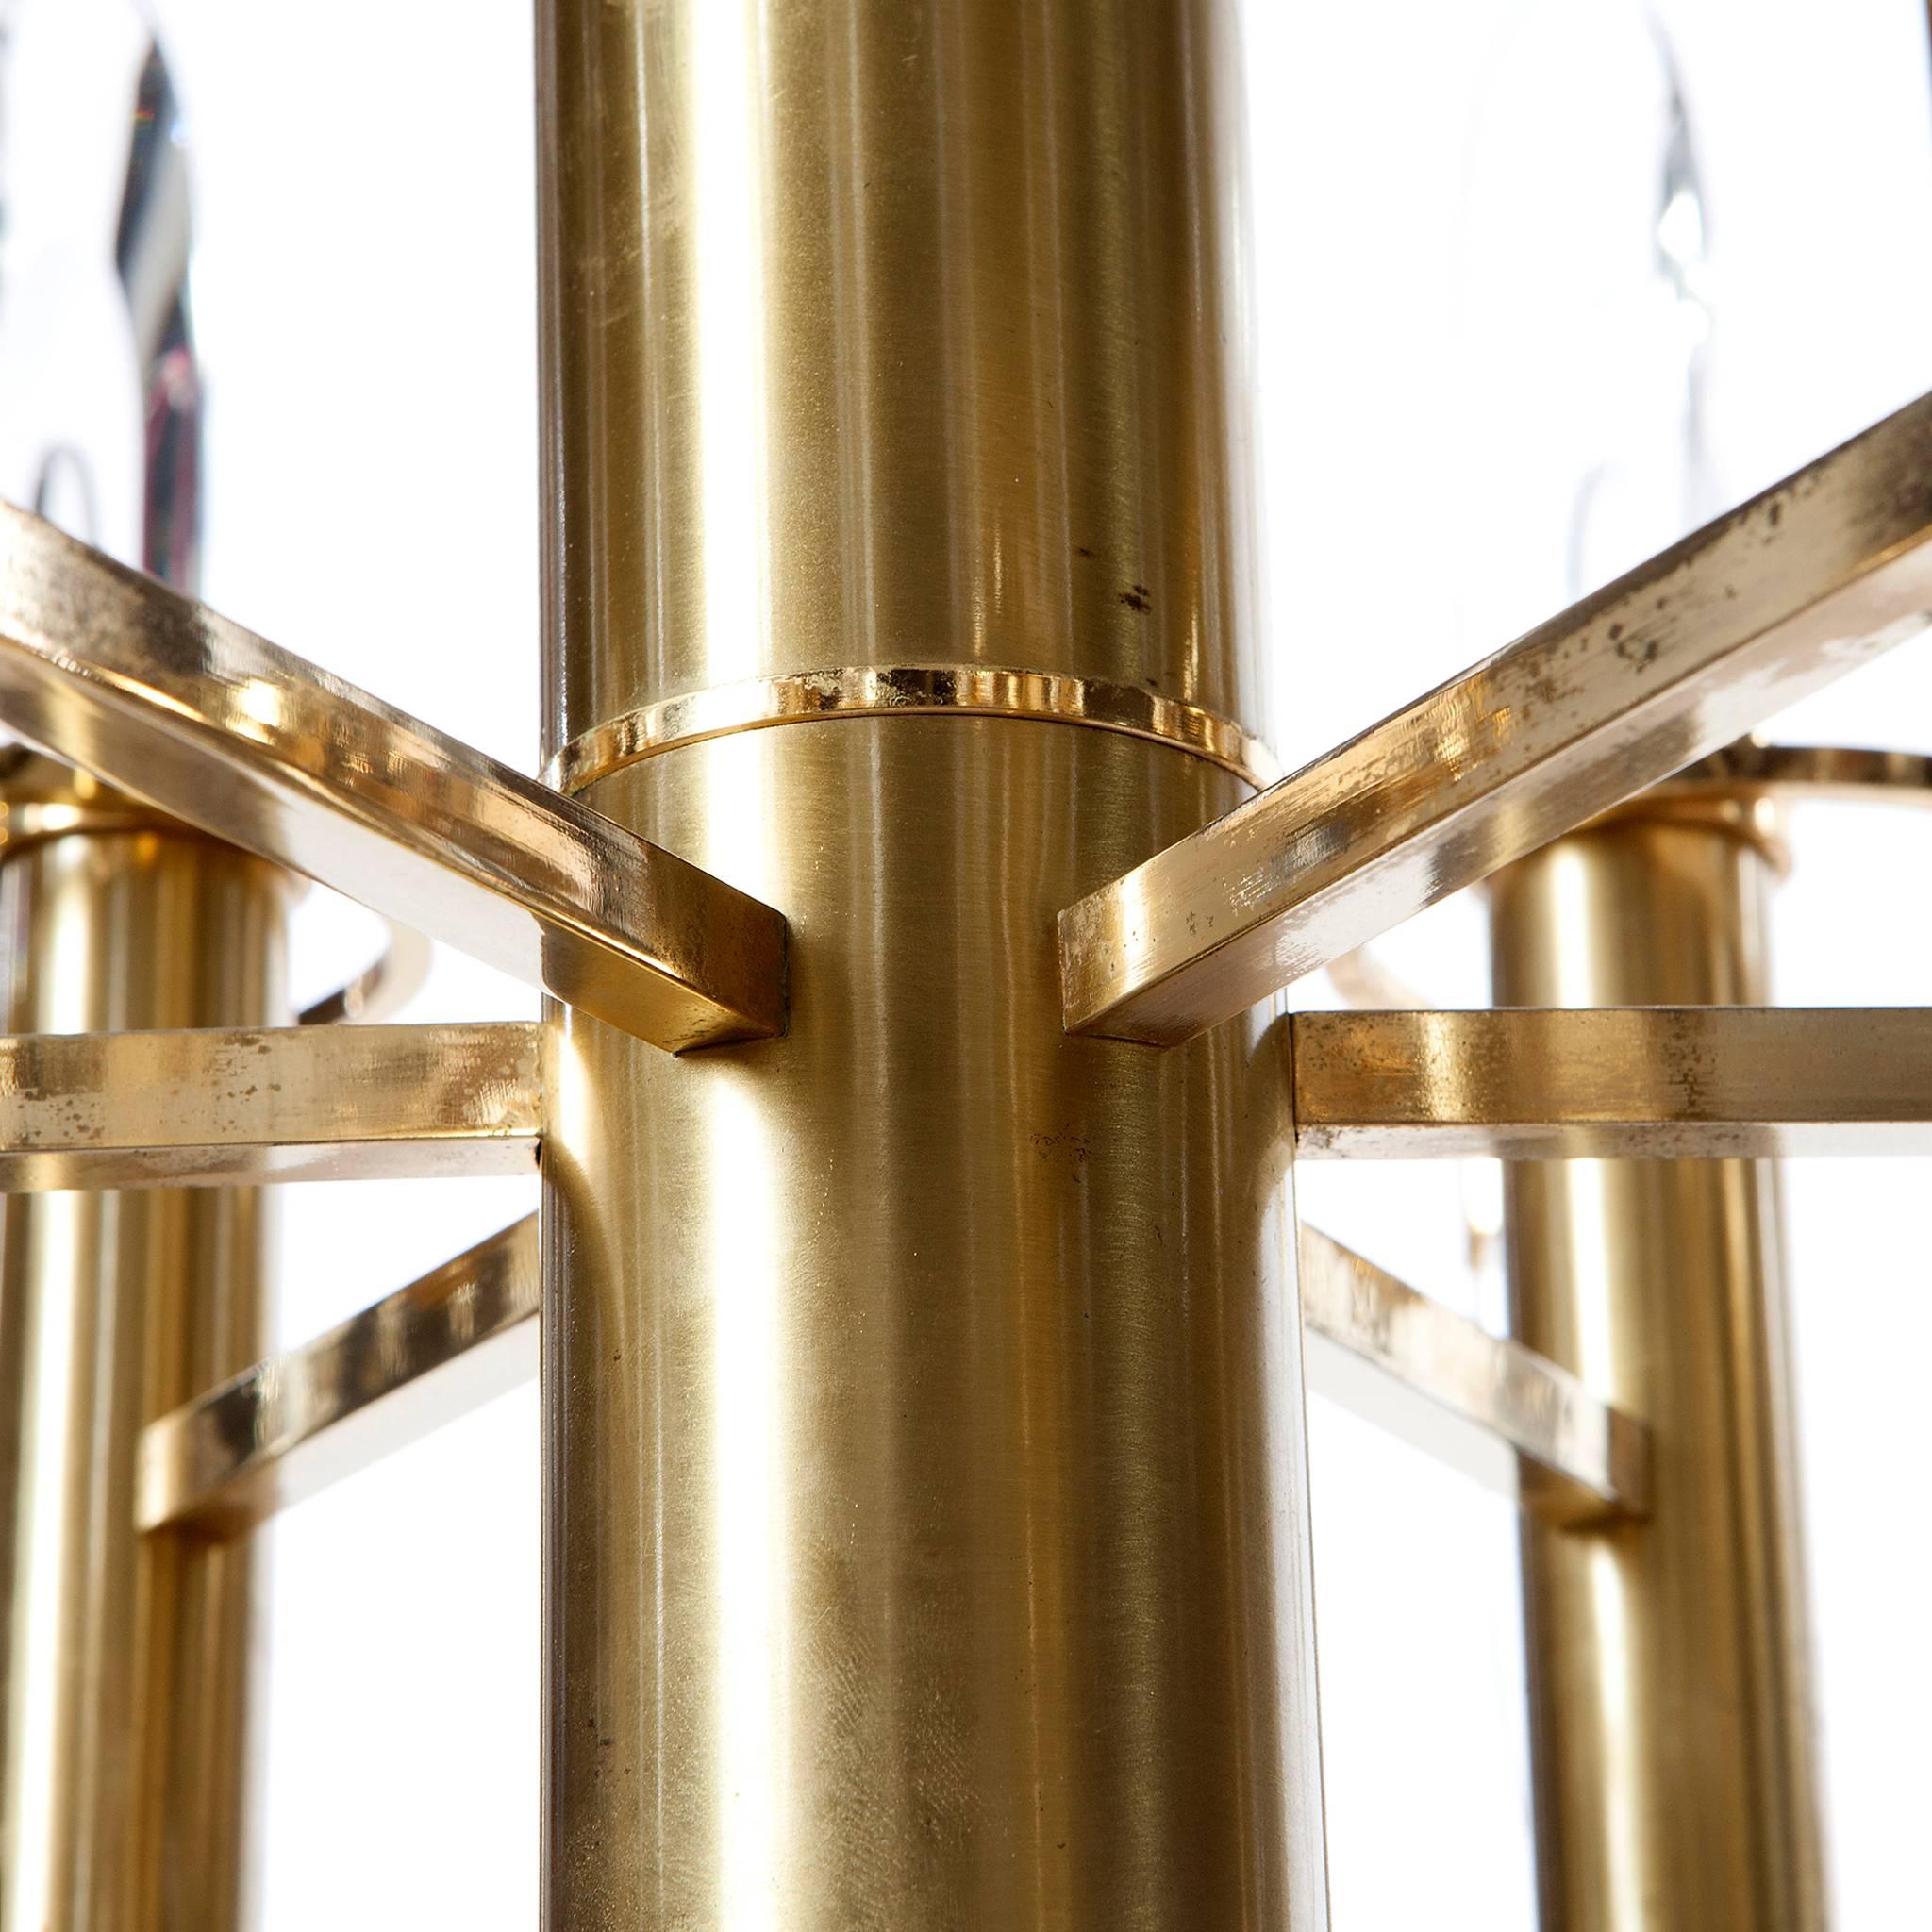 Klassischer Kronleuchter im Stil von Gaetano Sciolari mit charakteristischer Verwendung von Kristallglas und poliertem und vergoldetem Messing. Er fasst sechs Lampen und ist in gutem Zustand.  
Bitte beachten Sie, dass wir weitere ähnliche/passende